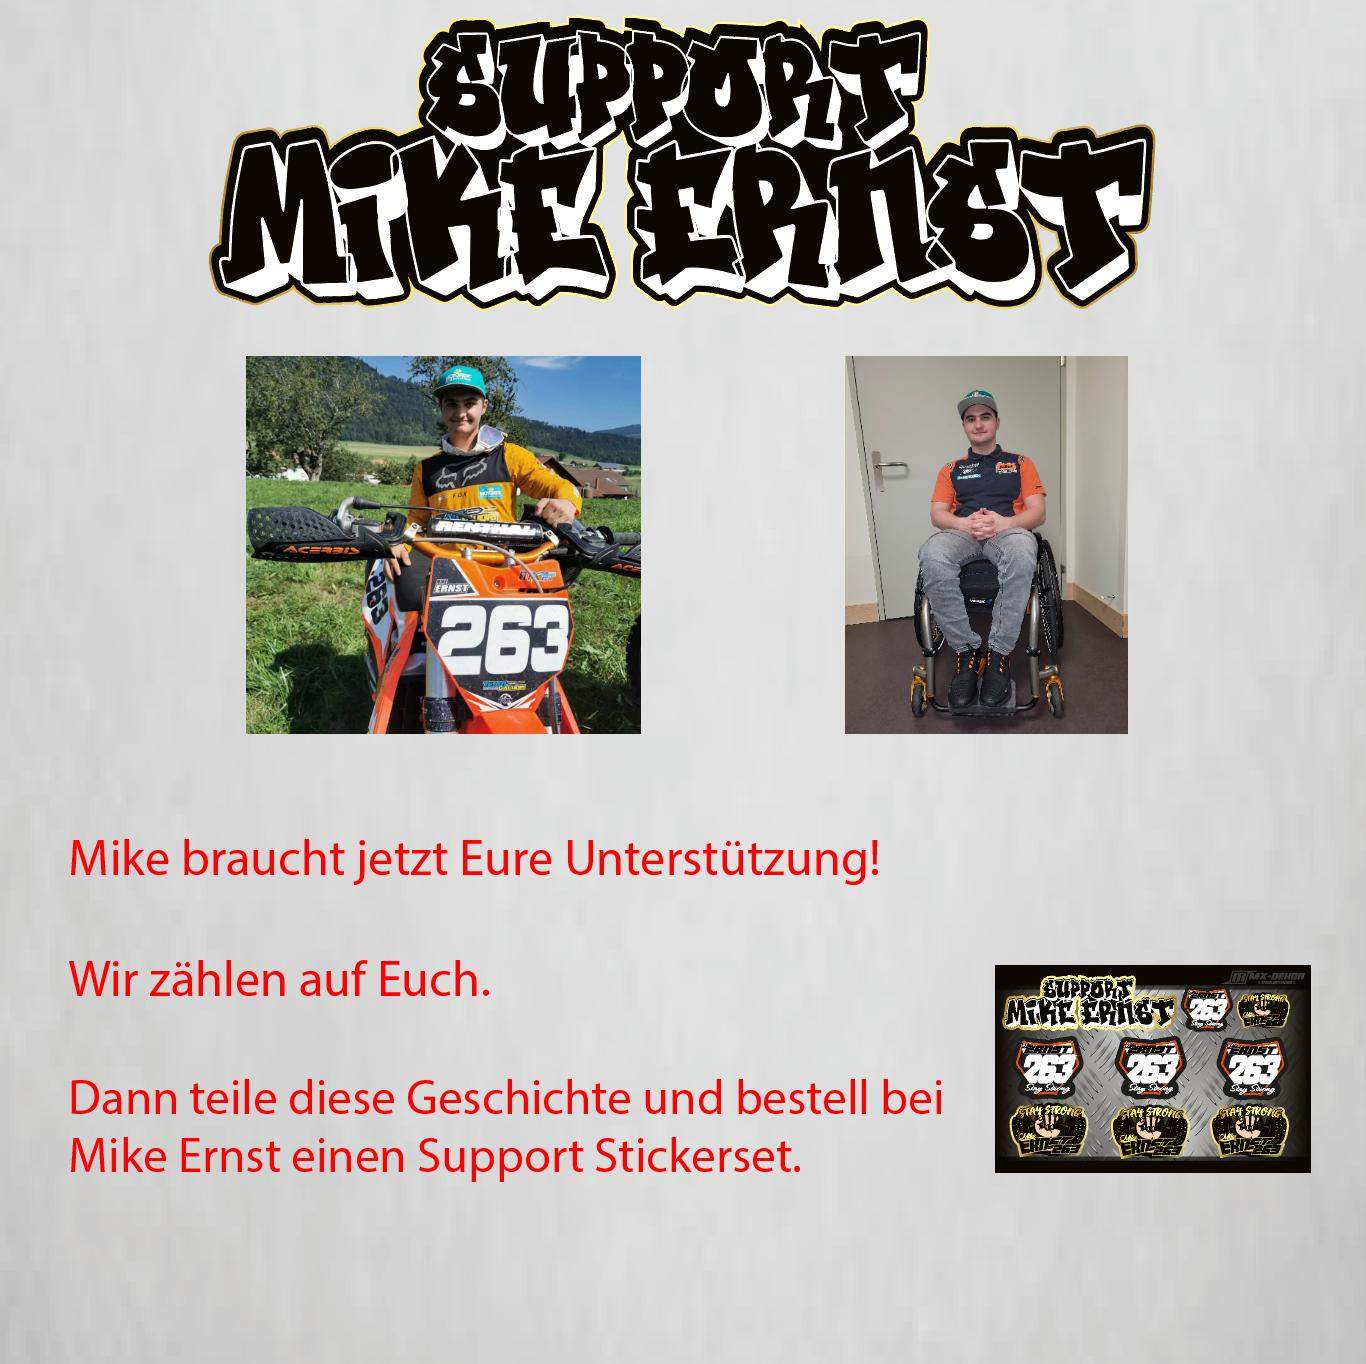 Support Stickerset Mike Ernst